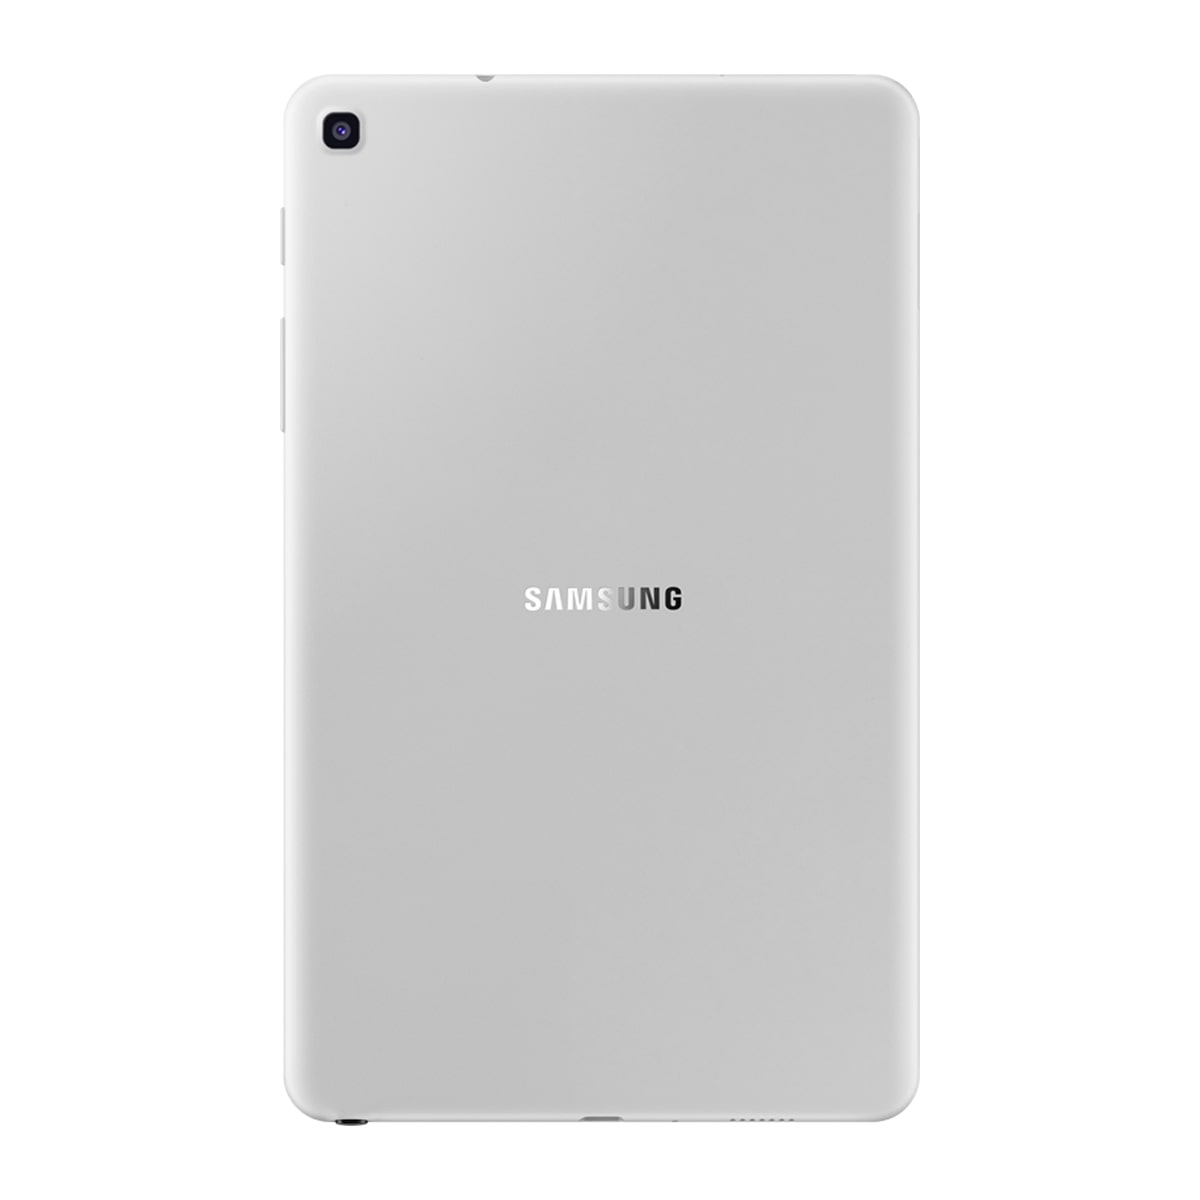 تبلت سامسونگ مدل Galaxy Tab A 8.0 2019 LTE P205 به همراه S Pen ظرفیت 32 گیگابایت